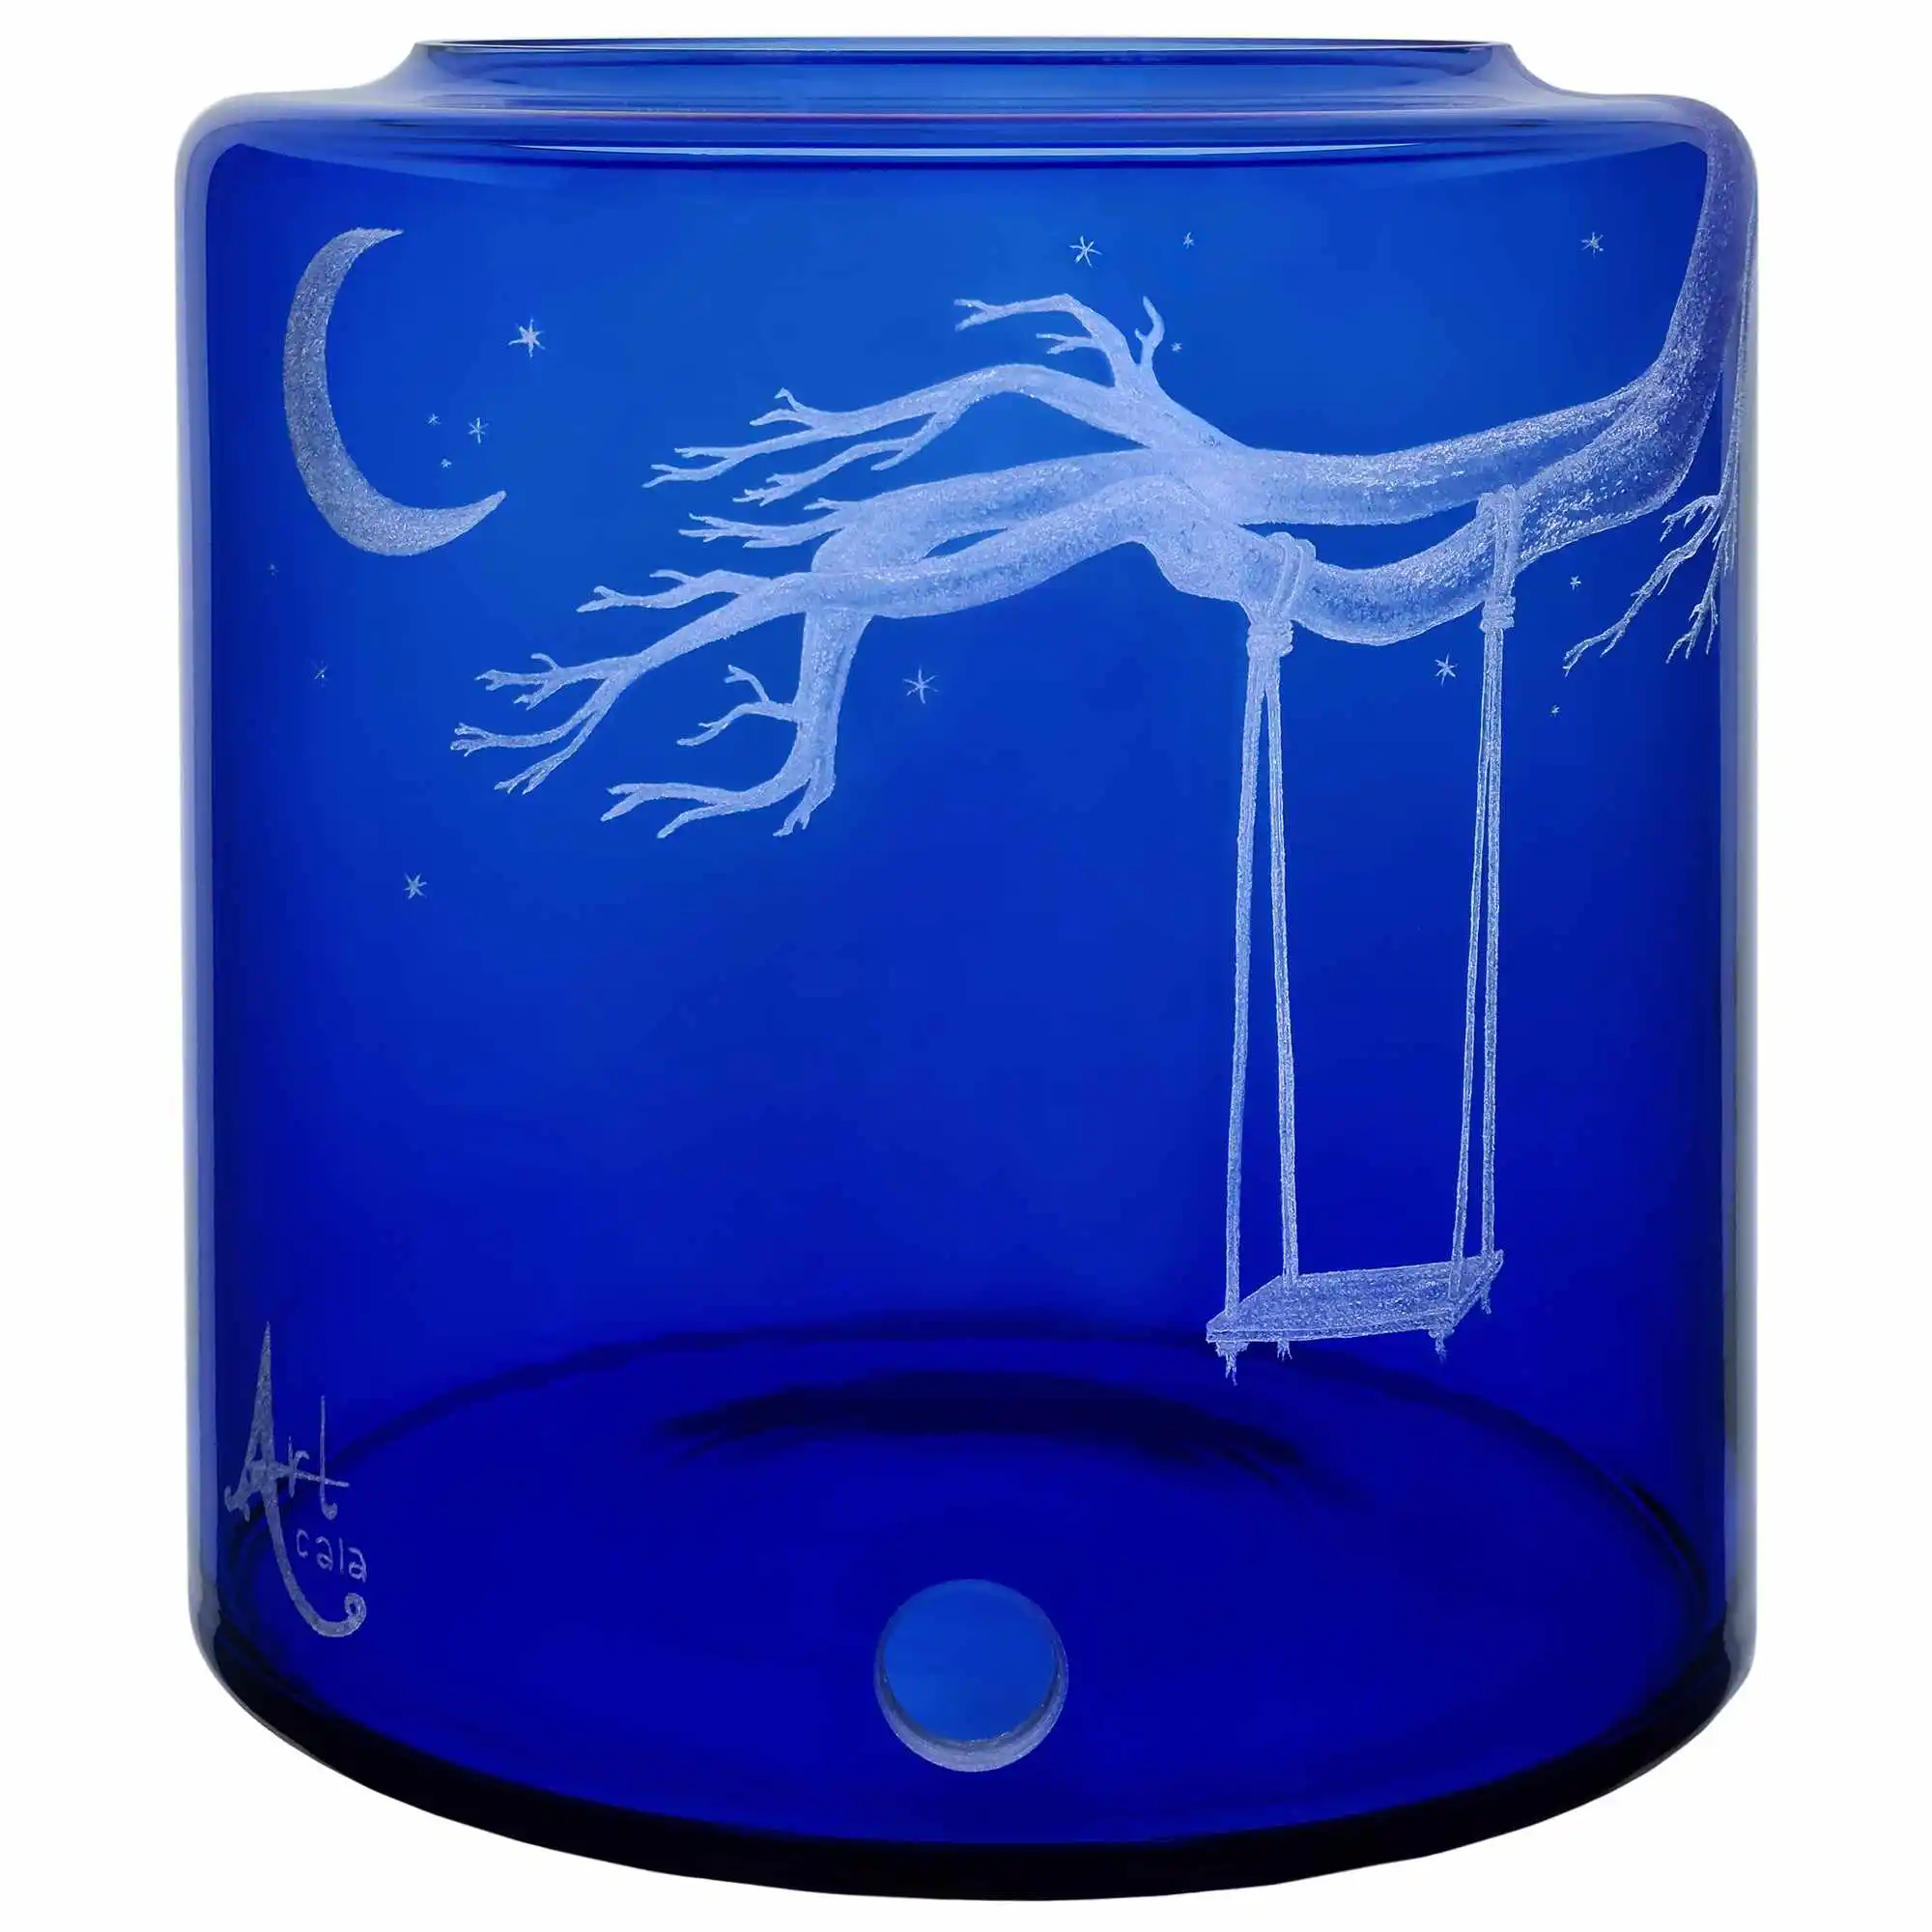 Glas- Vorratstank für einen Acala Wasserfilter Mini mit einer Handgravur. Die Gravur zeigt, auf blauem Glas, einen starken Ast eines Baumes an dem eine Schaukel mit einem langen Seil befestigt ist. Ansicht von rechts.